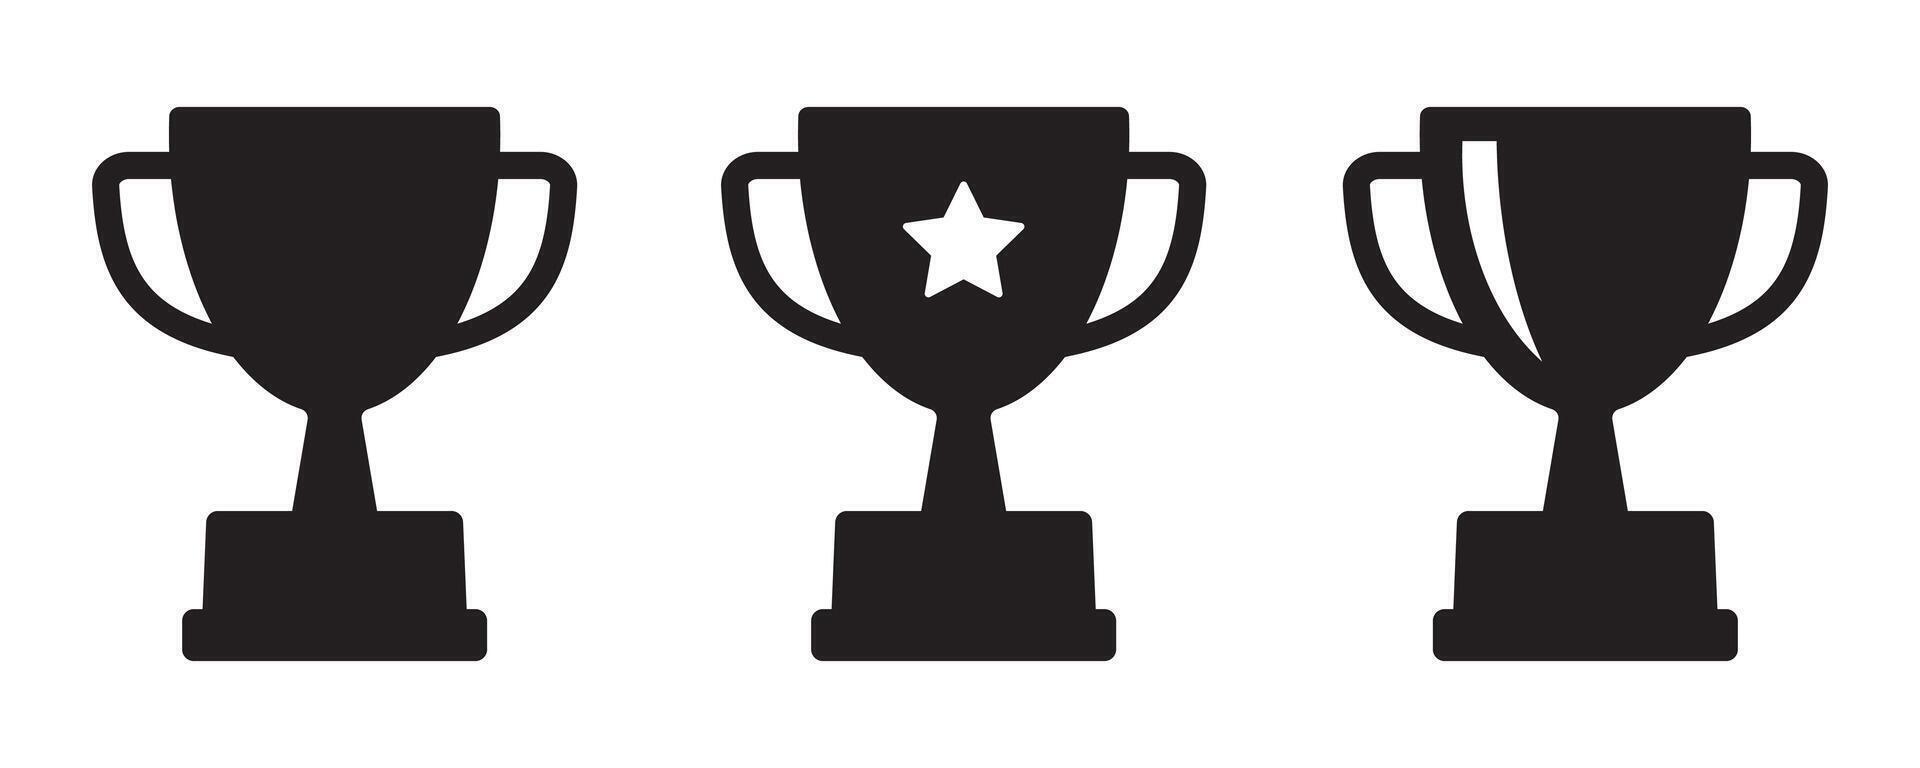 trofén ikon. trofén kopp, vinnare kopp, seger kopp vektor ikon. pris symbol tecken för webb och mobil.